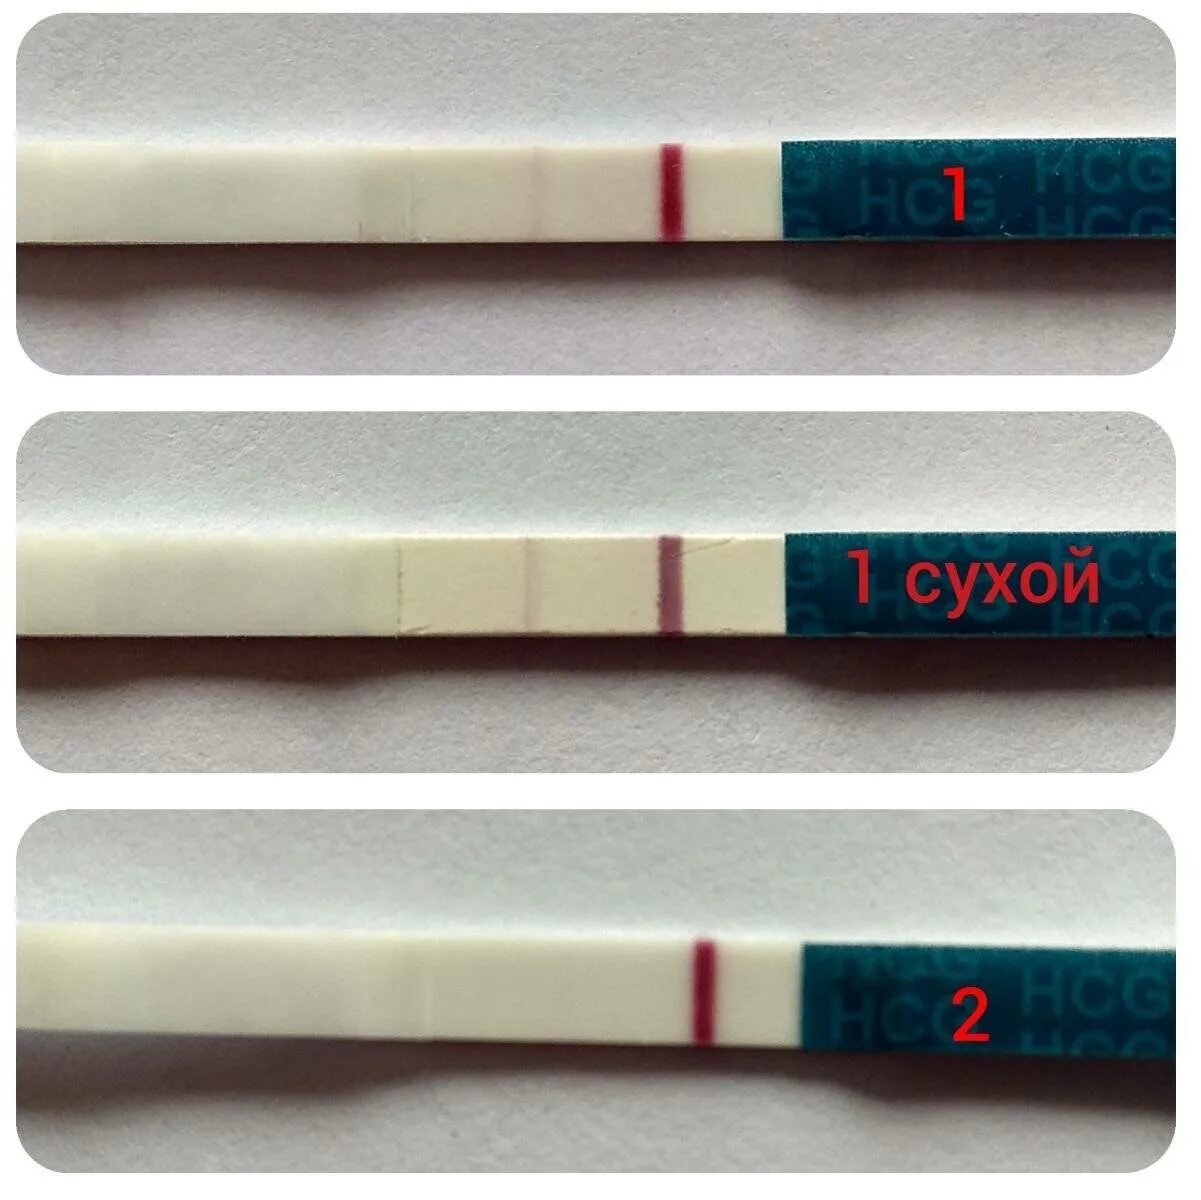 Реагент тест на беременность. Тест фраутест с 2 тест полосками. Тест на беременность одна полоска вторая реагент. Тест на беременность HCG 2 полоски.